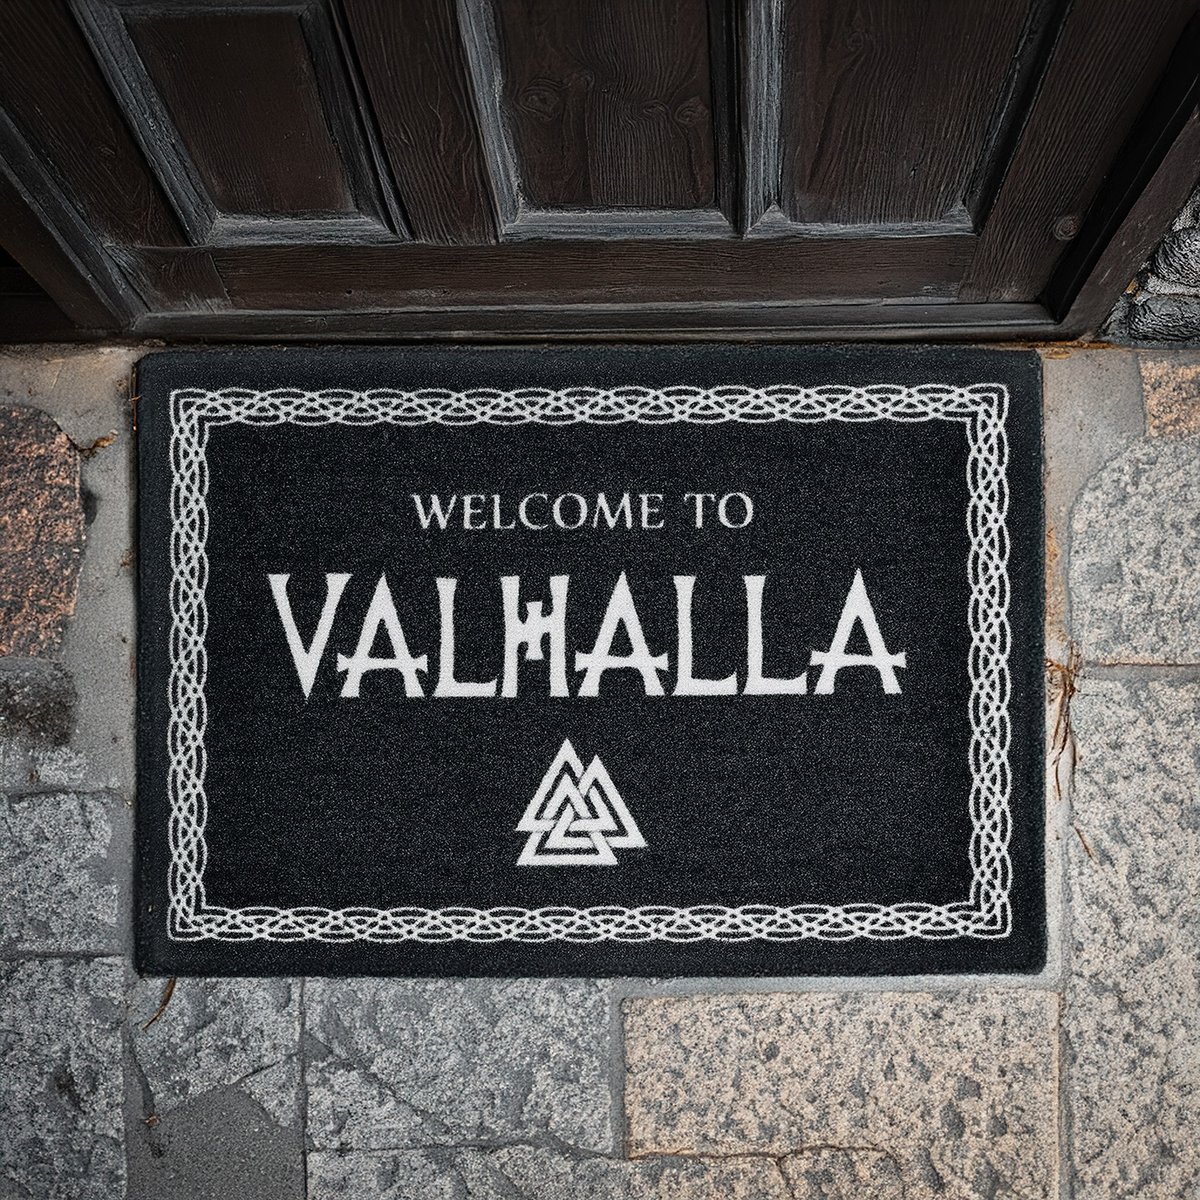 Attenzione, mortali! ️☝️
Ecco a voi lo zerbino che accoglierà i vostri ospiti in maniera super epica: 'Welcome to Valhalla'! ⚔️
Volete acquistarlo? Cliccate il link 👉 emp.me/97d5

#valhalla #vikings #pagan #metalhead #metalmusic #EMPitalia